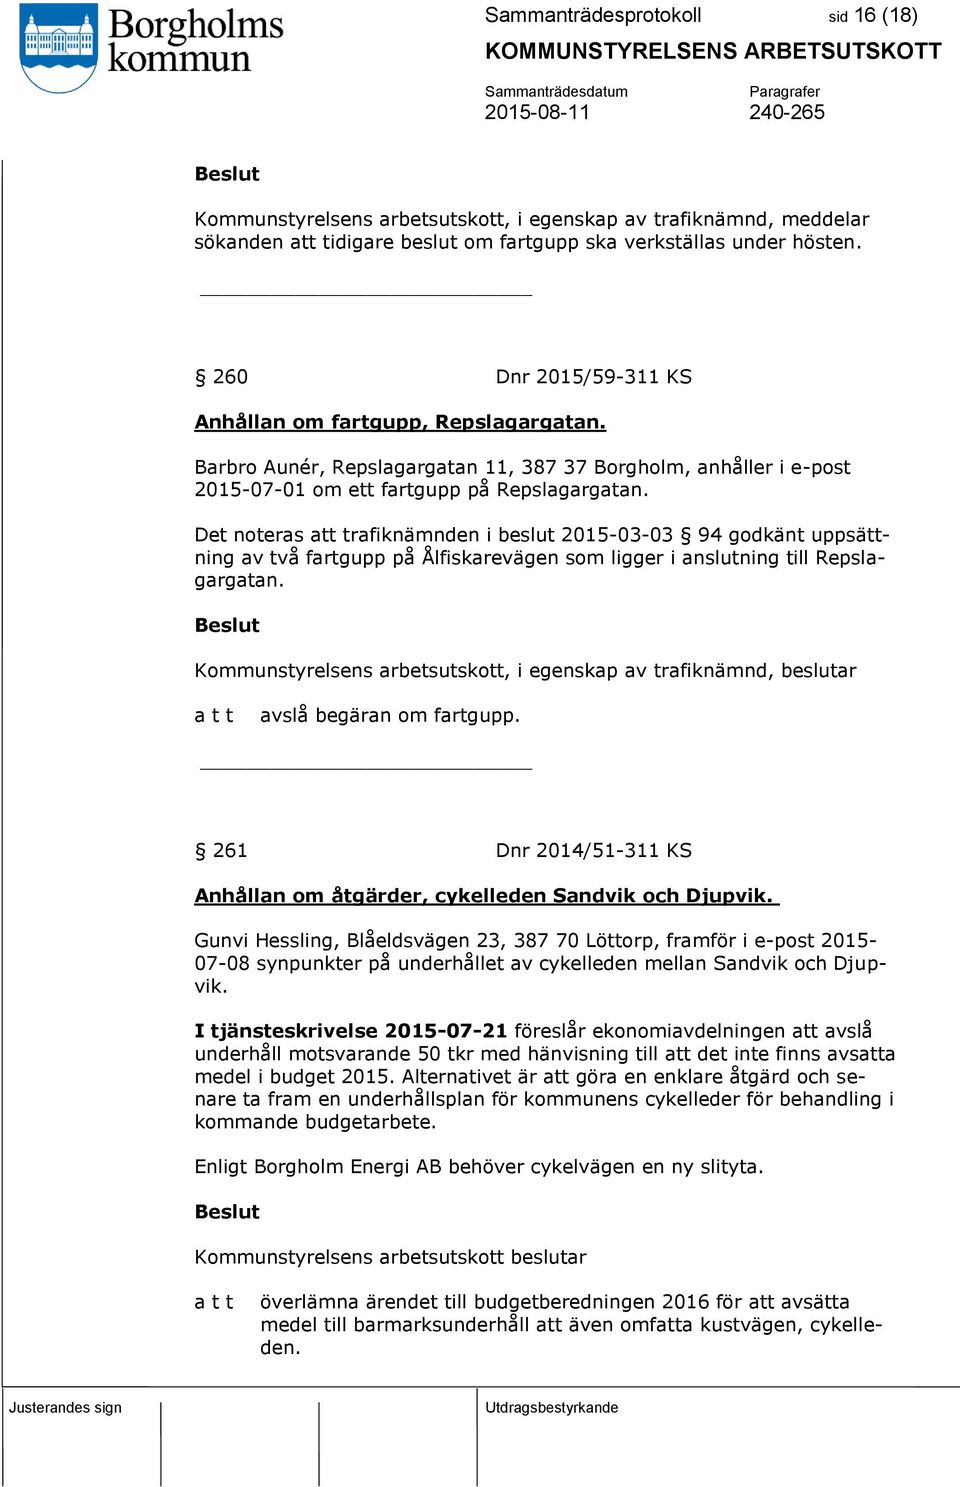 Det noteras att trafiknämnden i beslut 2015-03-03 94 godkänt uppsättning av två fartgupp på Ålfiskarevägen som ligger i anslutning till Repslagargatan.